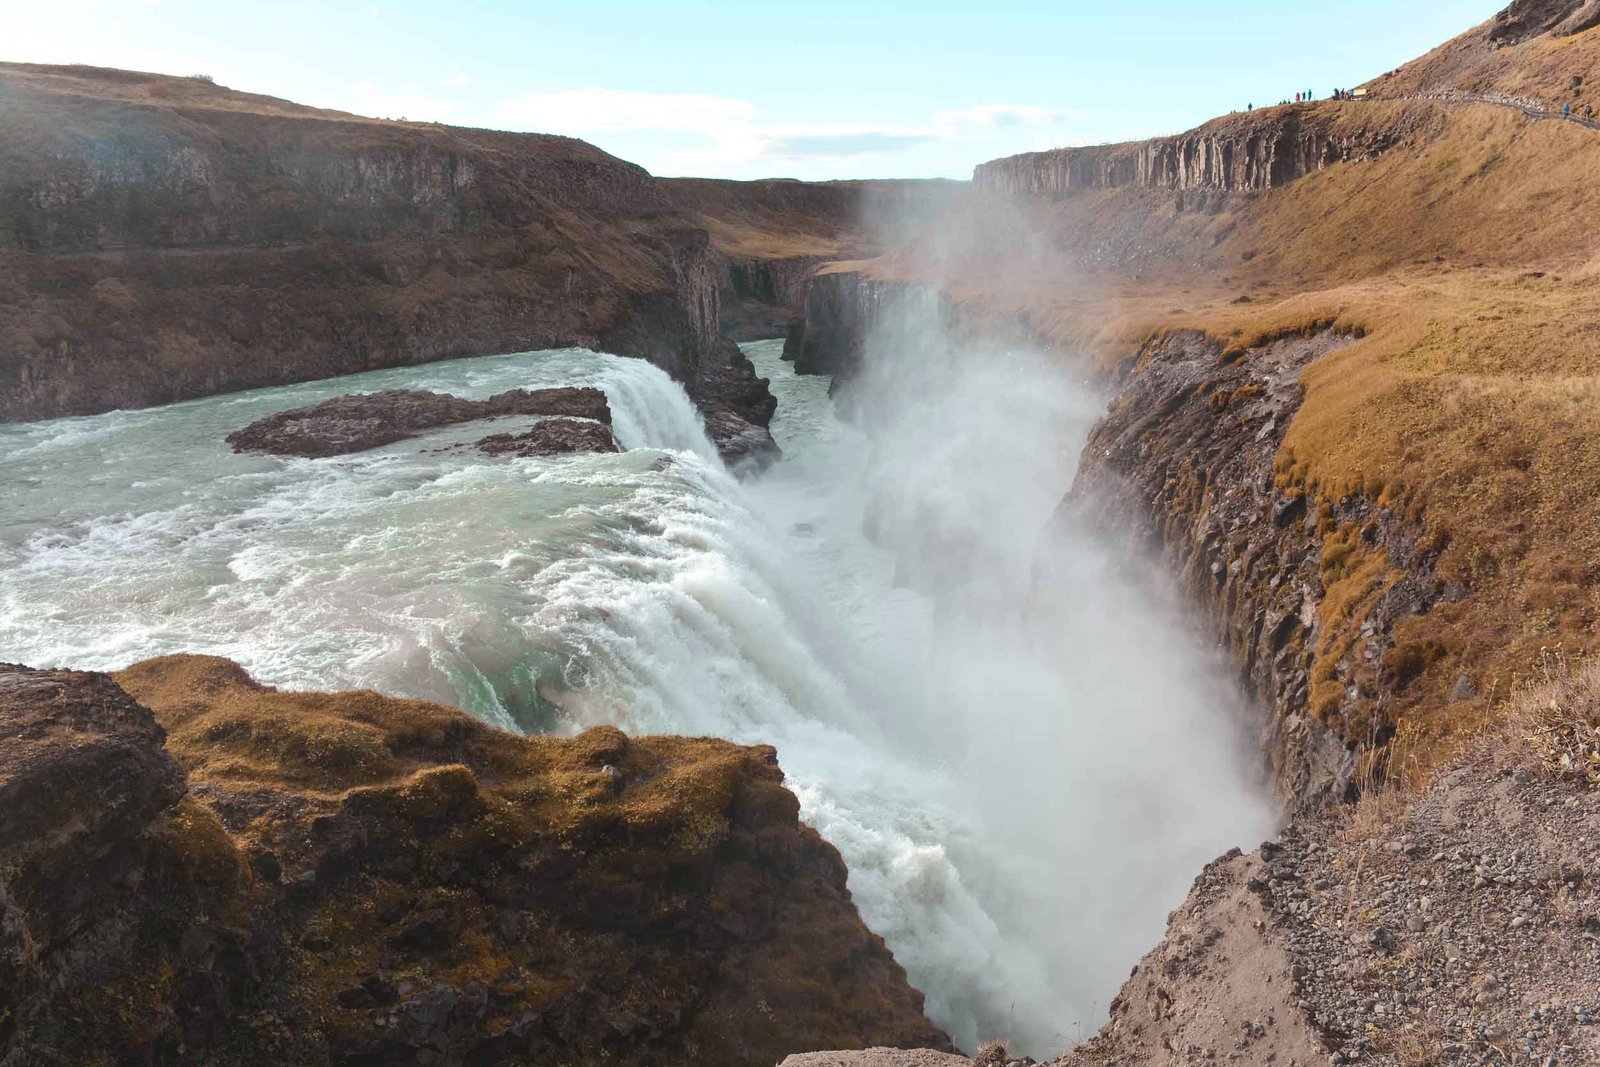 cuánto cuesta viajar a Islandia